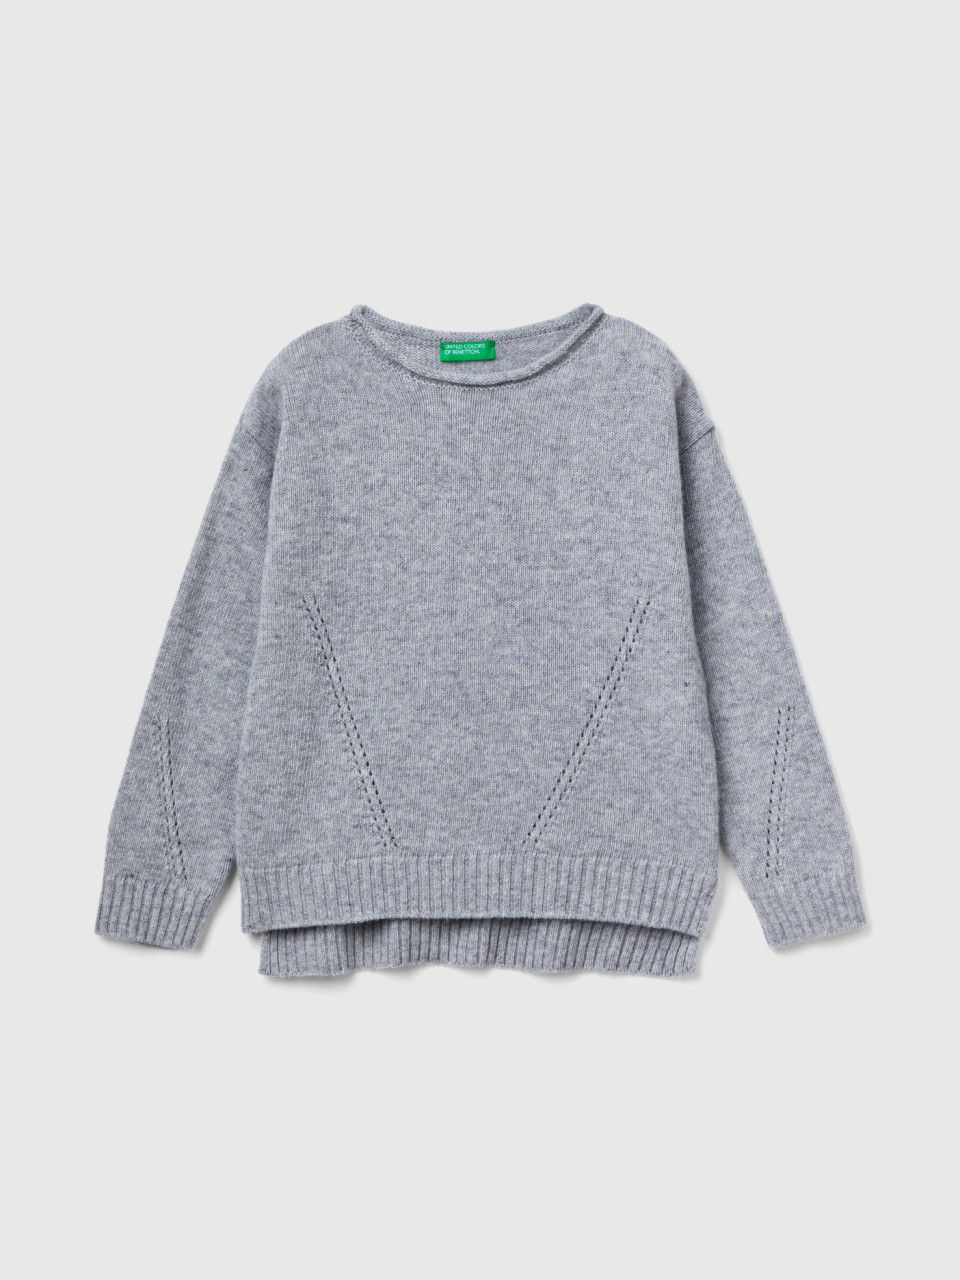 Benetton, Knit Sweater With Playful Stitching, Light Gray, Kids